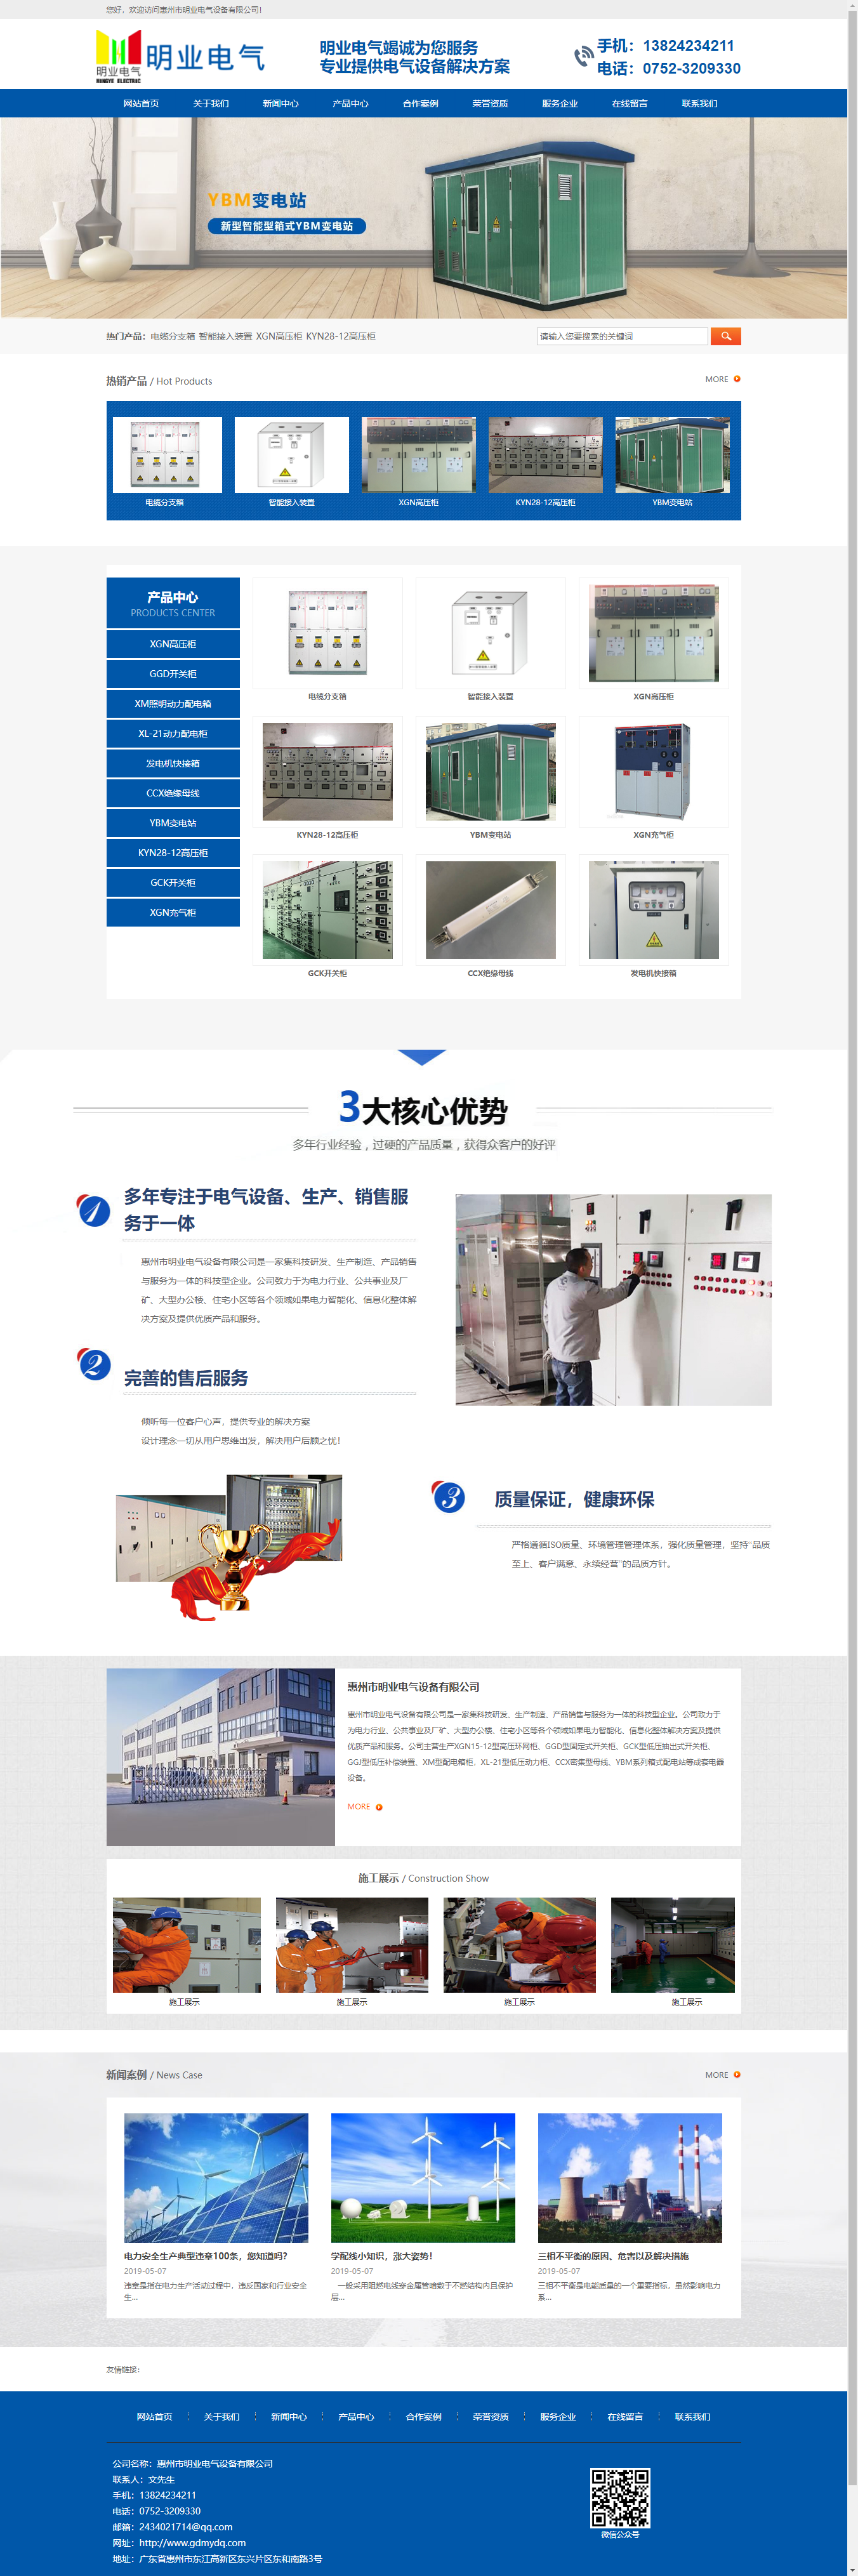 惠州市明业电气设备有限公司网站案例